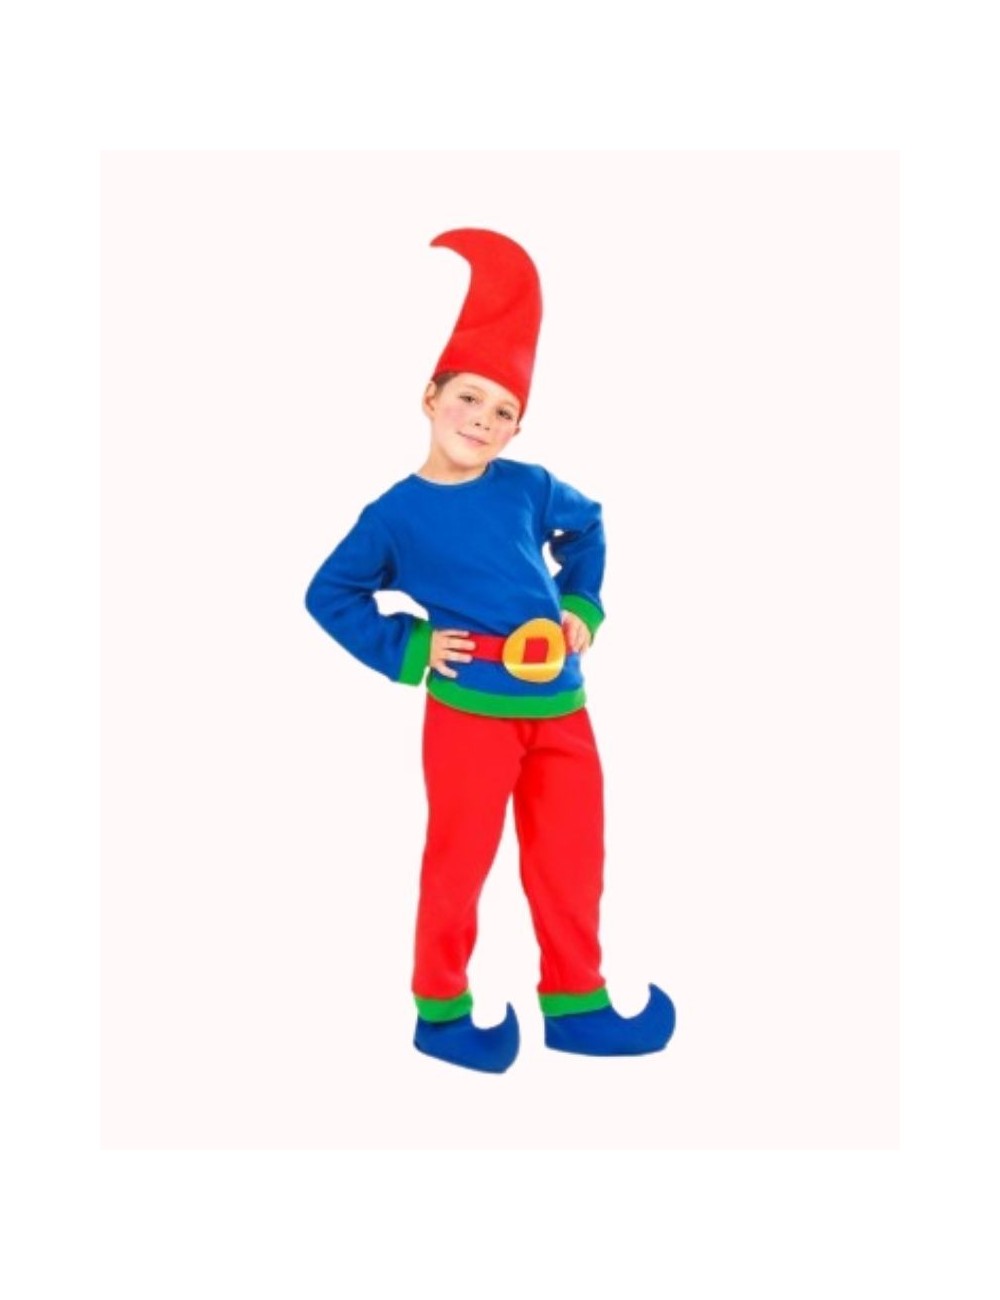 Gnome child costume